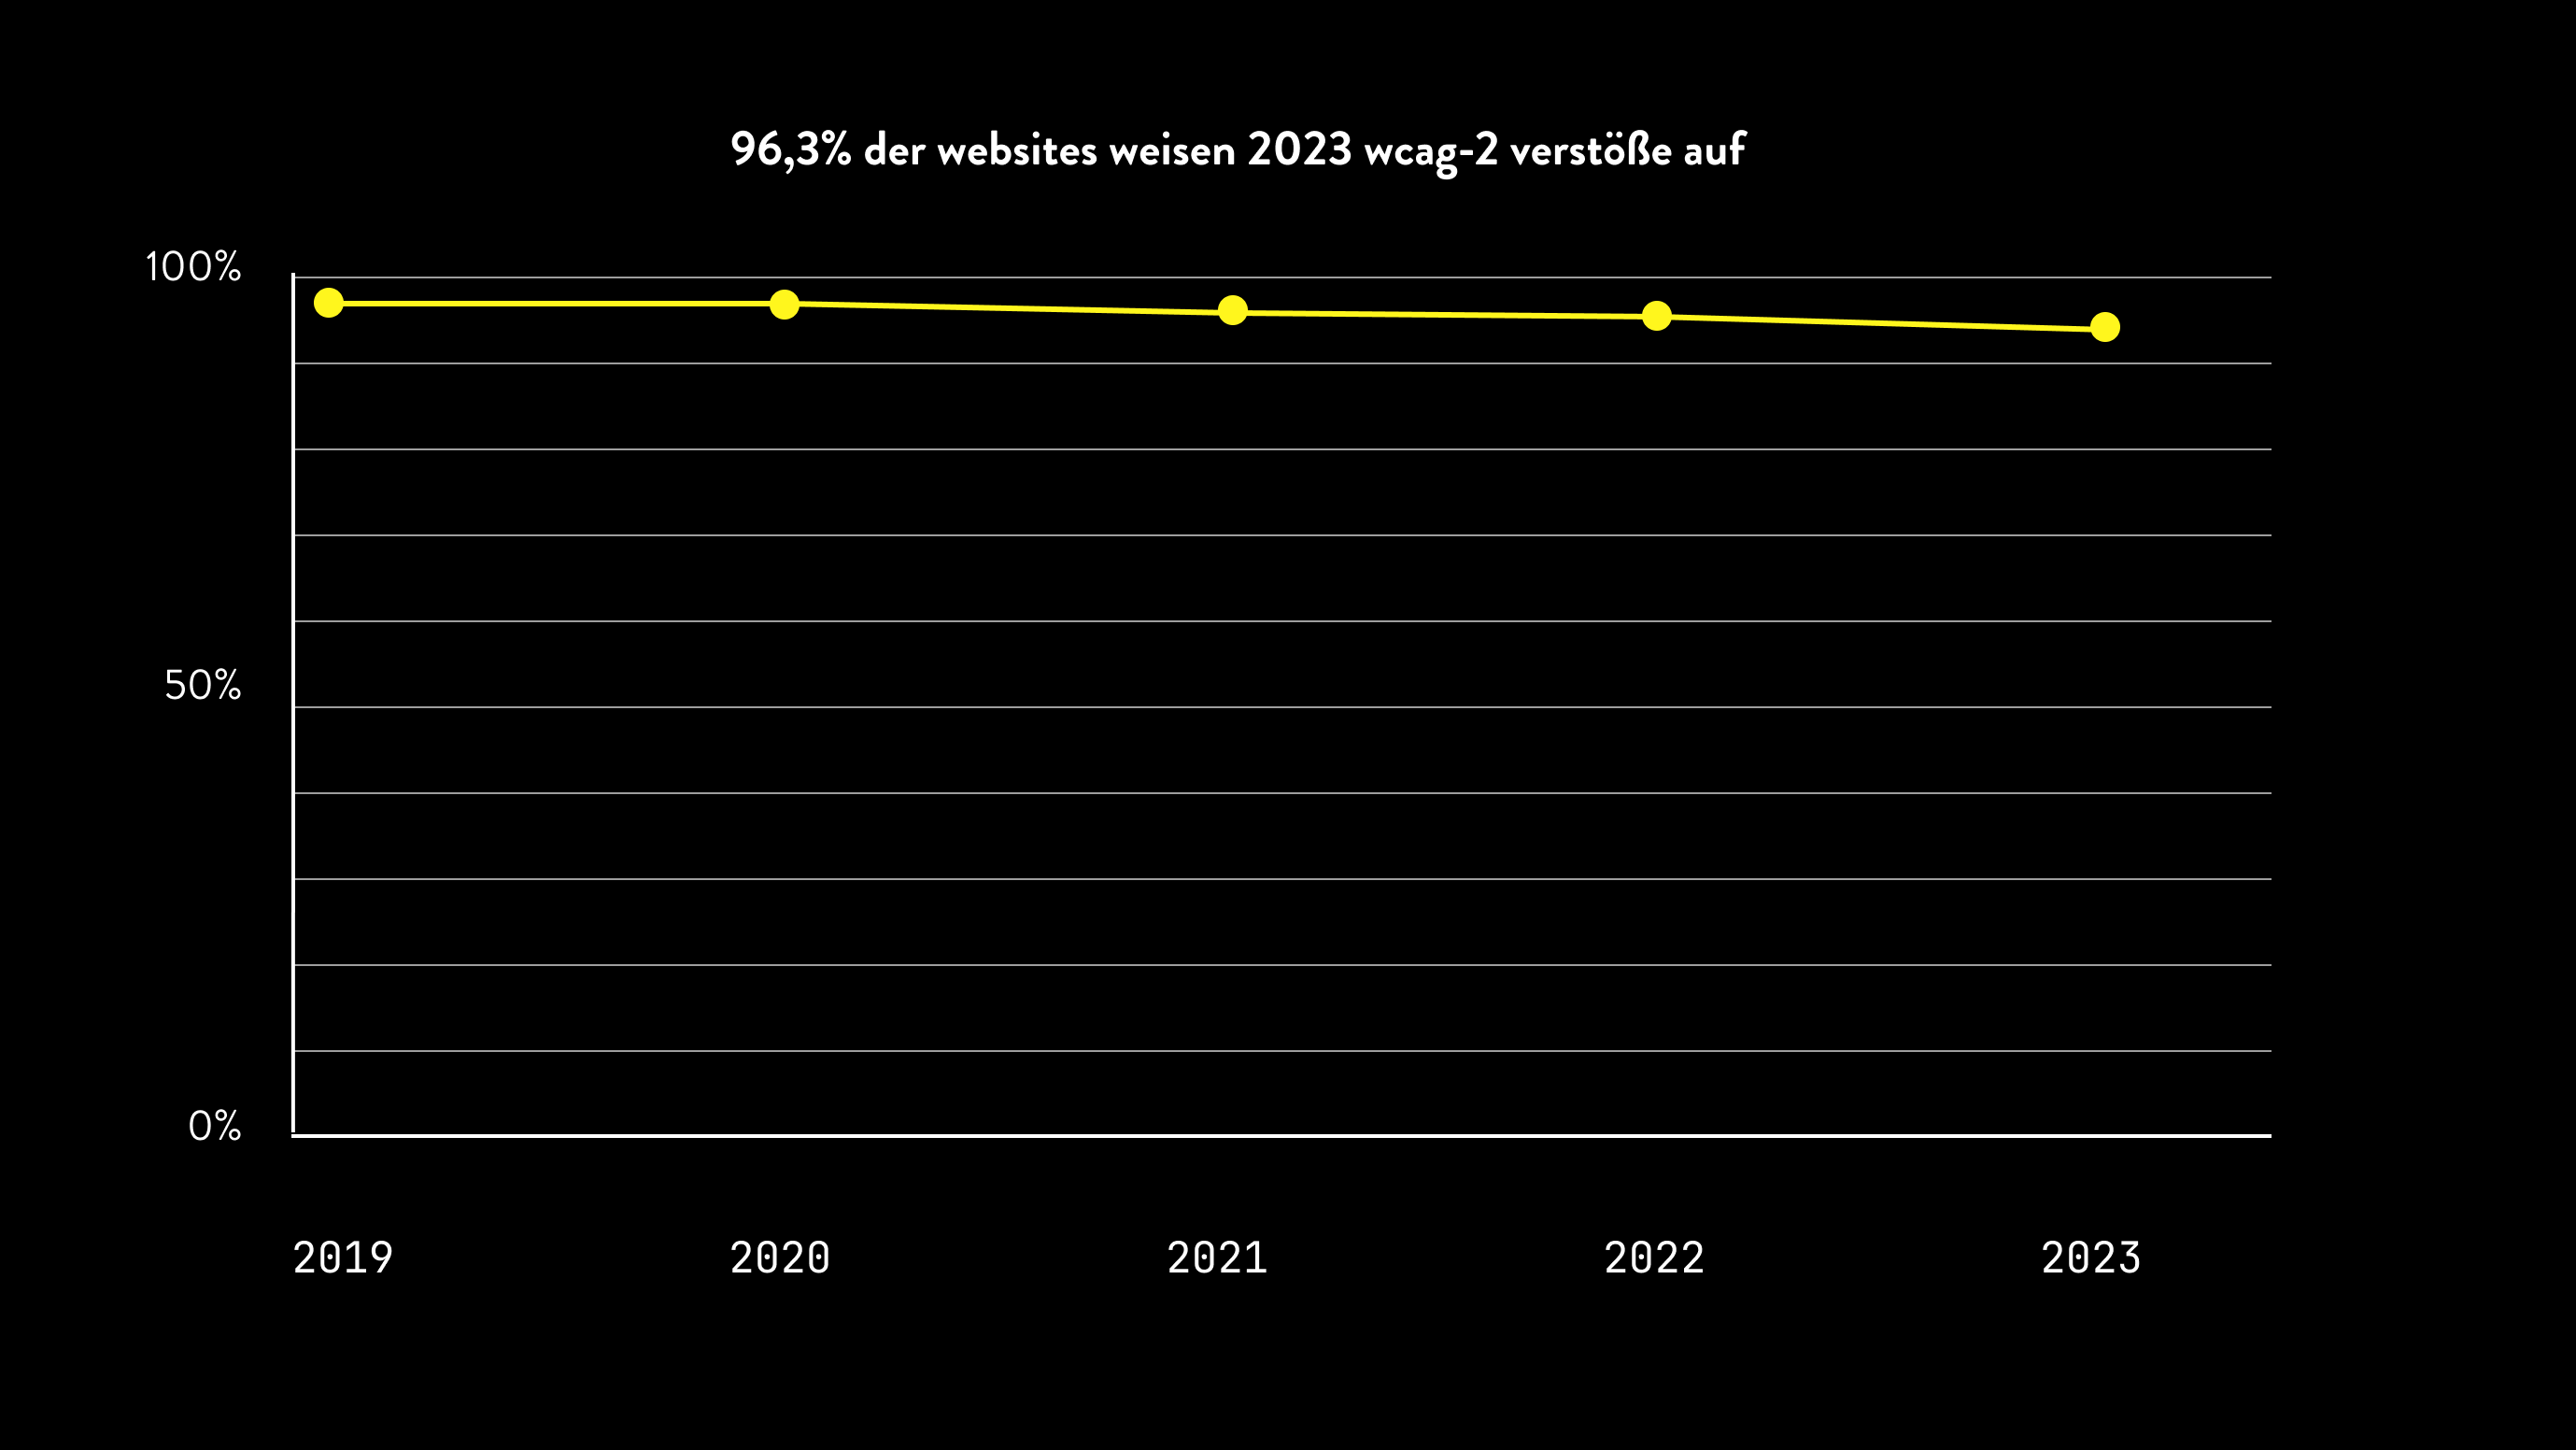 Gelbe Grafik auf schwarzem Hintergrund
96,3% der Websites weisen 2023 wcag2-verstöße auf